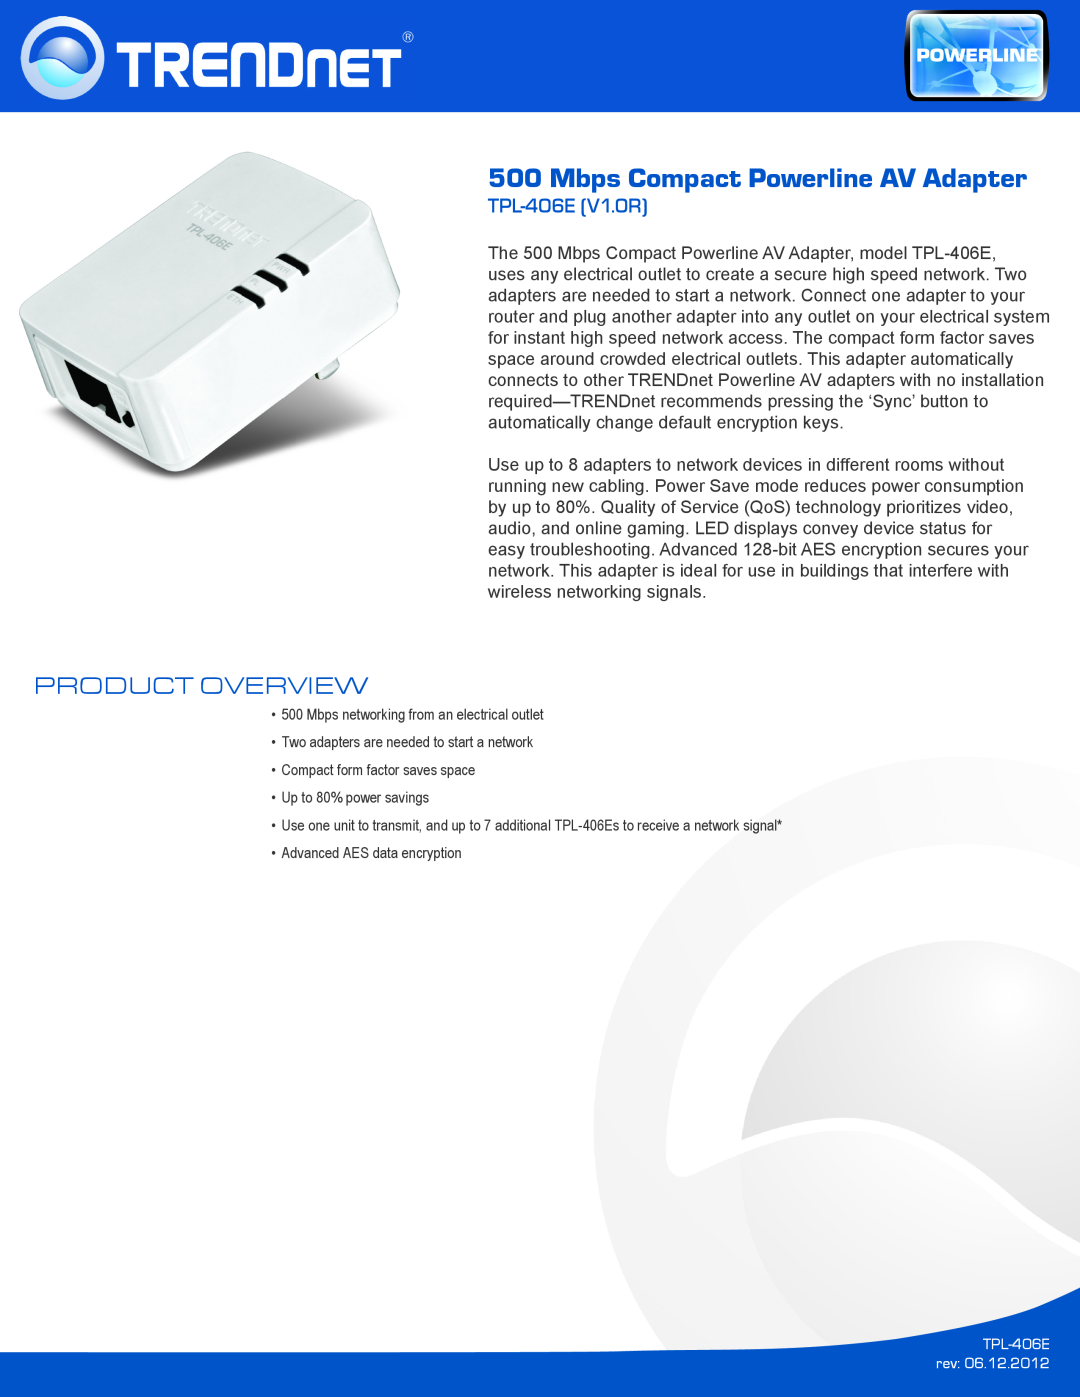 TRENDnet TPL406E manual Product Overview, TPL-406E V1.0R, Mbps Compact Powerline AV Adapter 